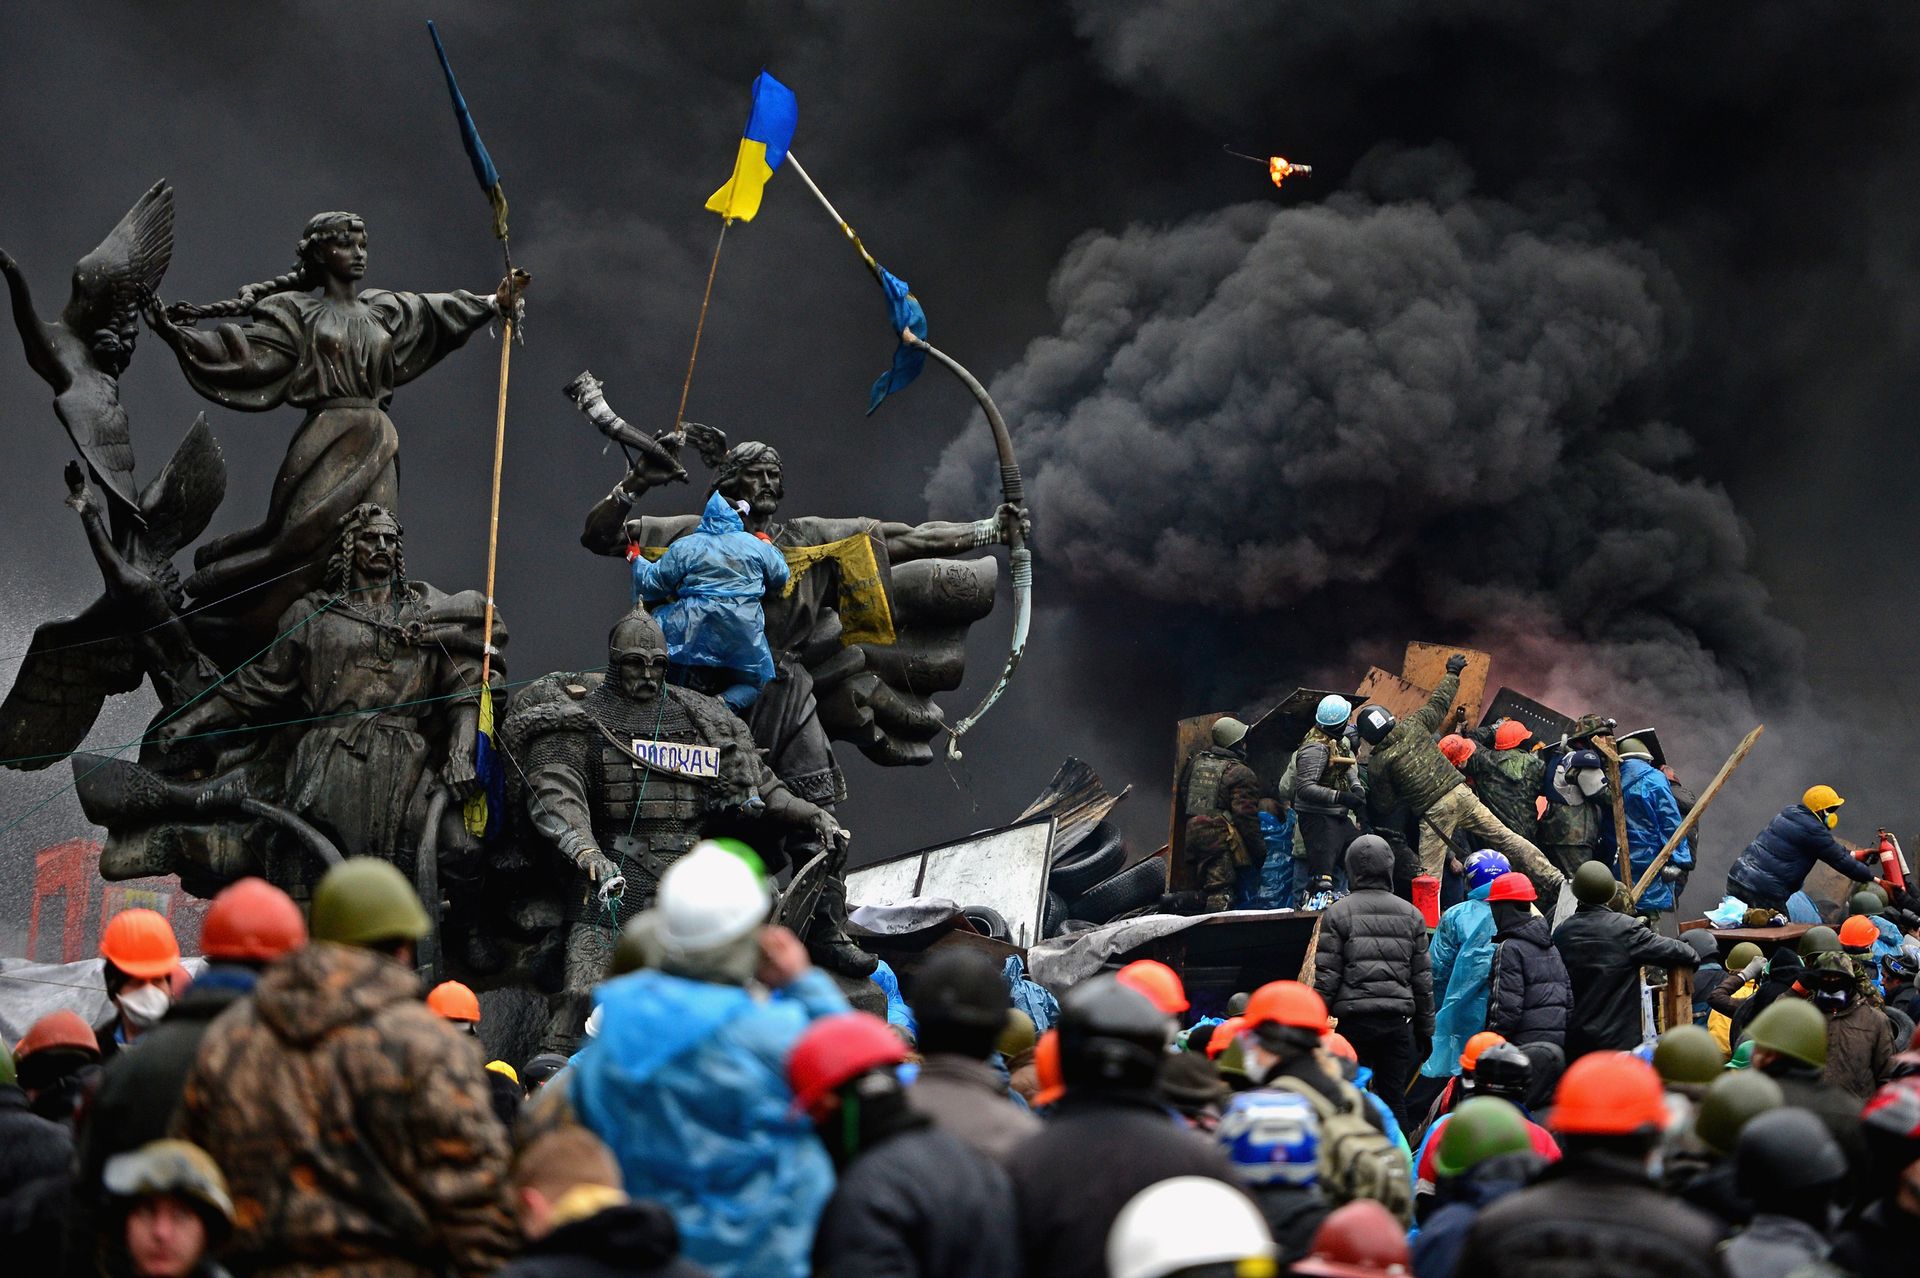 Des manifestants anti-gouvernementaux continuent de s’affronter à la police sur la place de l’Indépendance, malgré une trêve convenue entre le président ukrainien et les dirigeants de l’opposition, le 20 février 2014 à Kiev, en Ukraine. Après plusieurs se